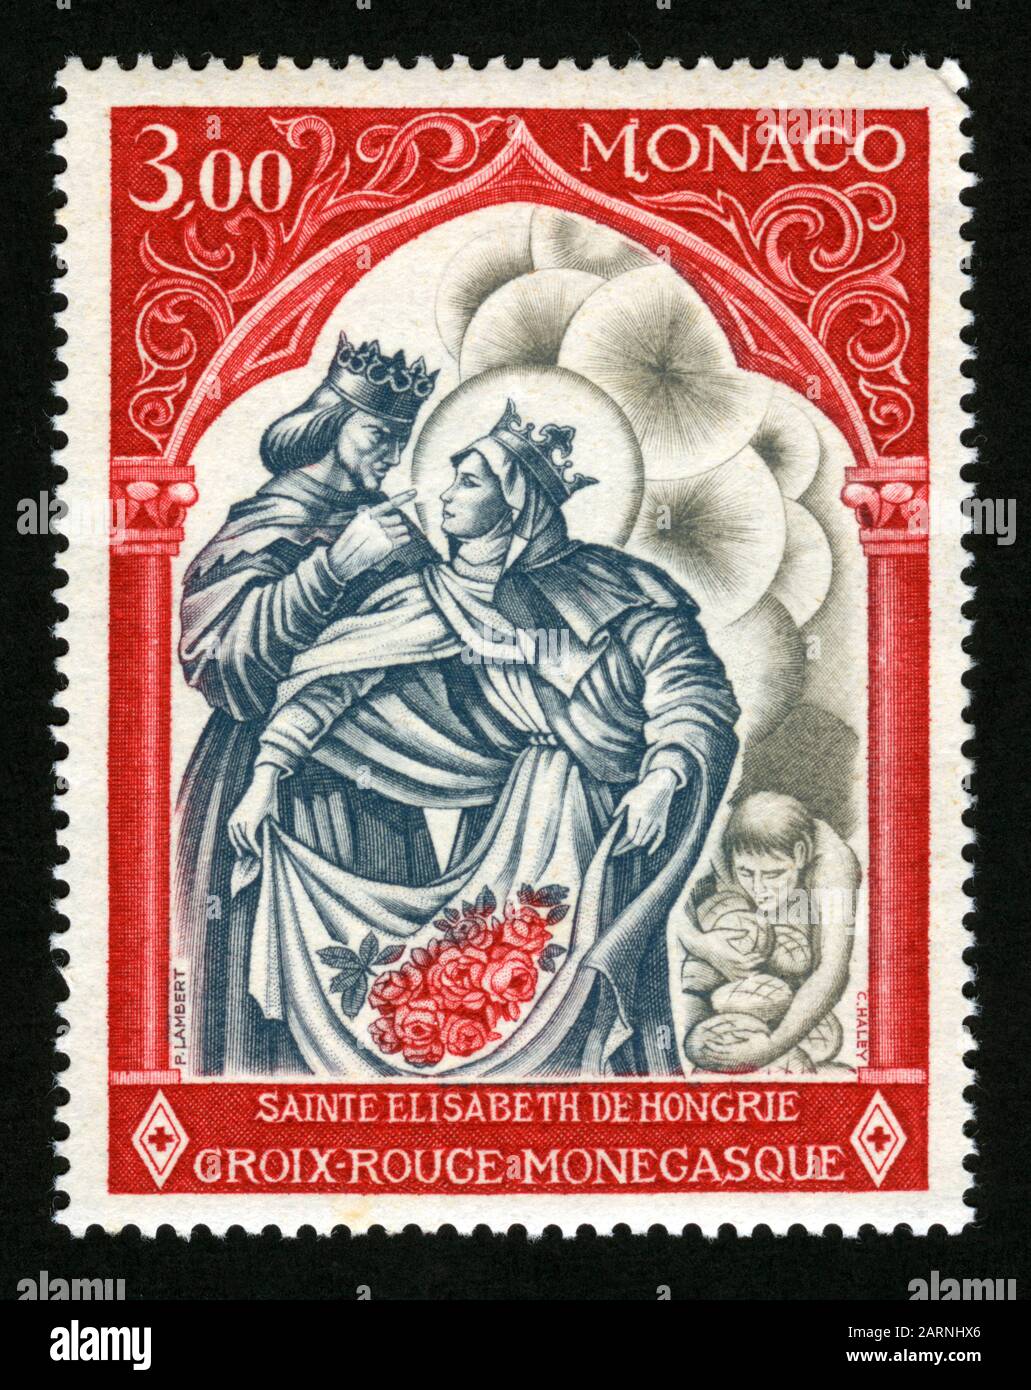 Imprimé timbres à Monaco, Saint Elisabeth de Hongrie, Croix-Rouge monégasque Banque D'Images